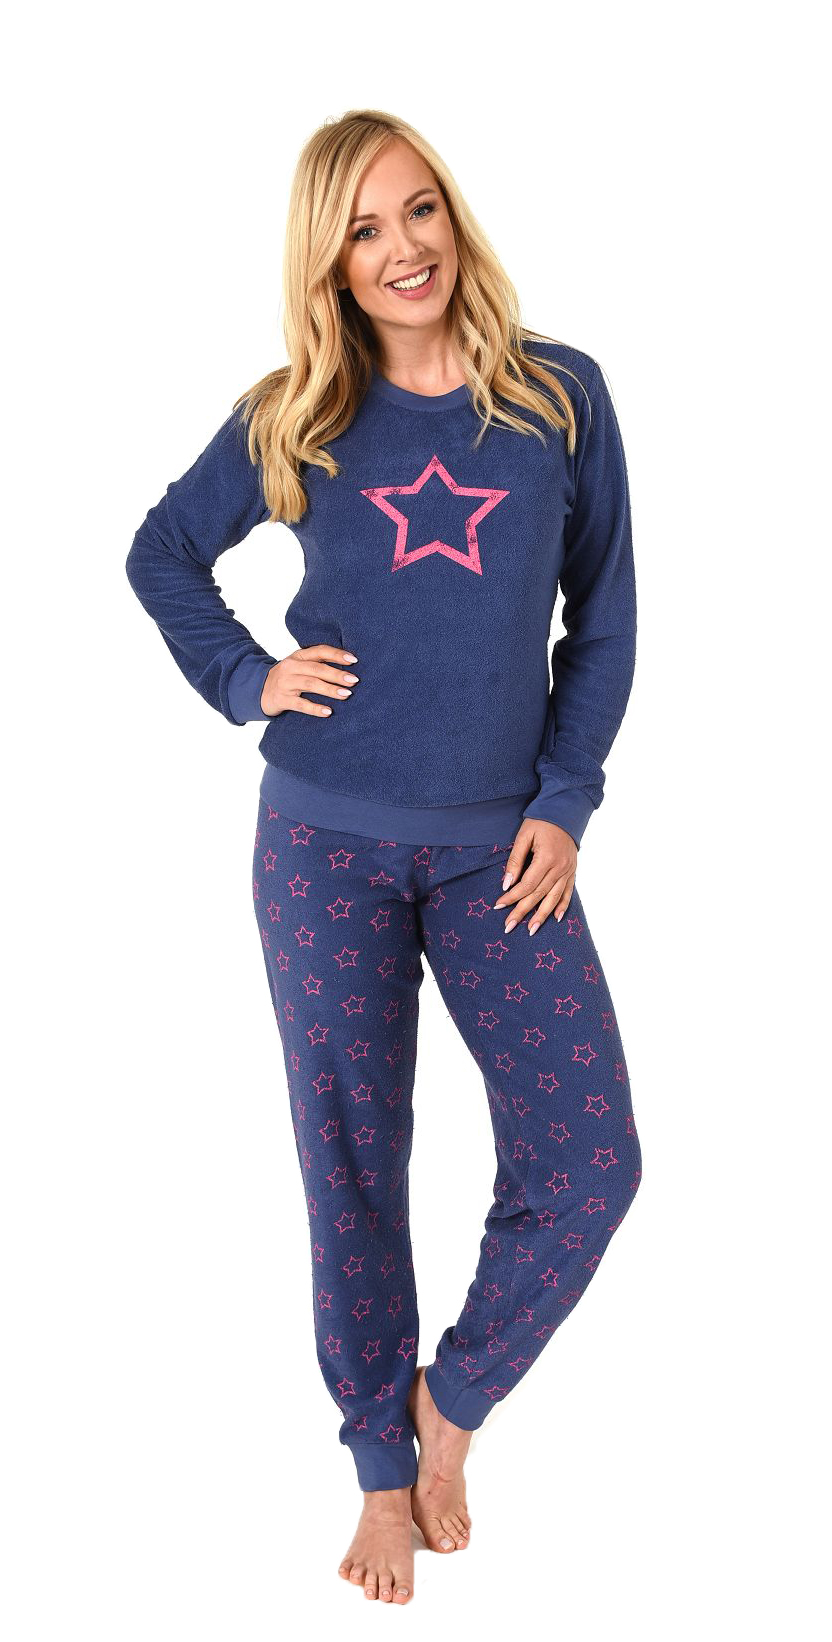 Damen Frottee Pyjama langarm Schlafanzug mit Bündchen und Sterne Optik - 291 201 13 942